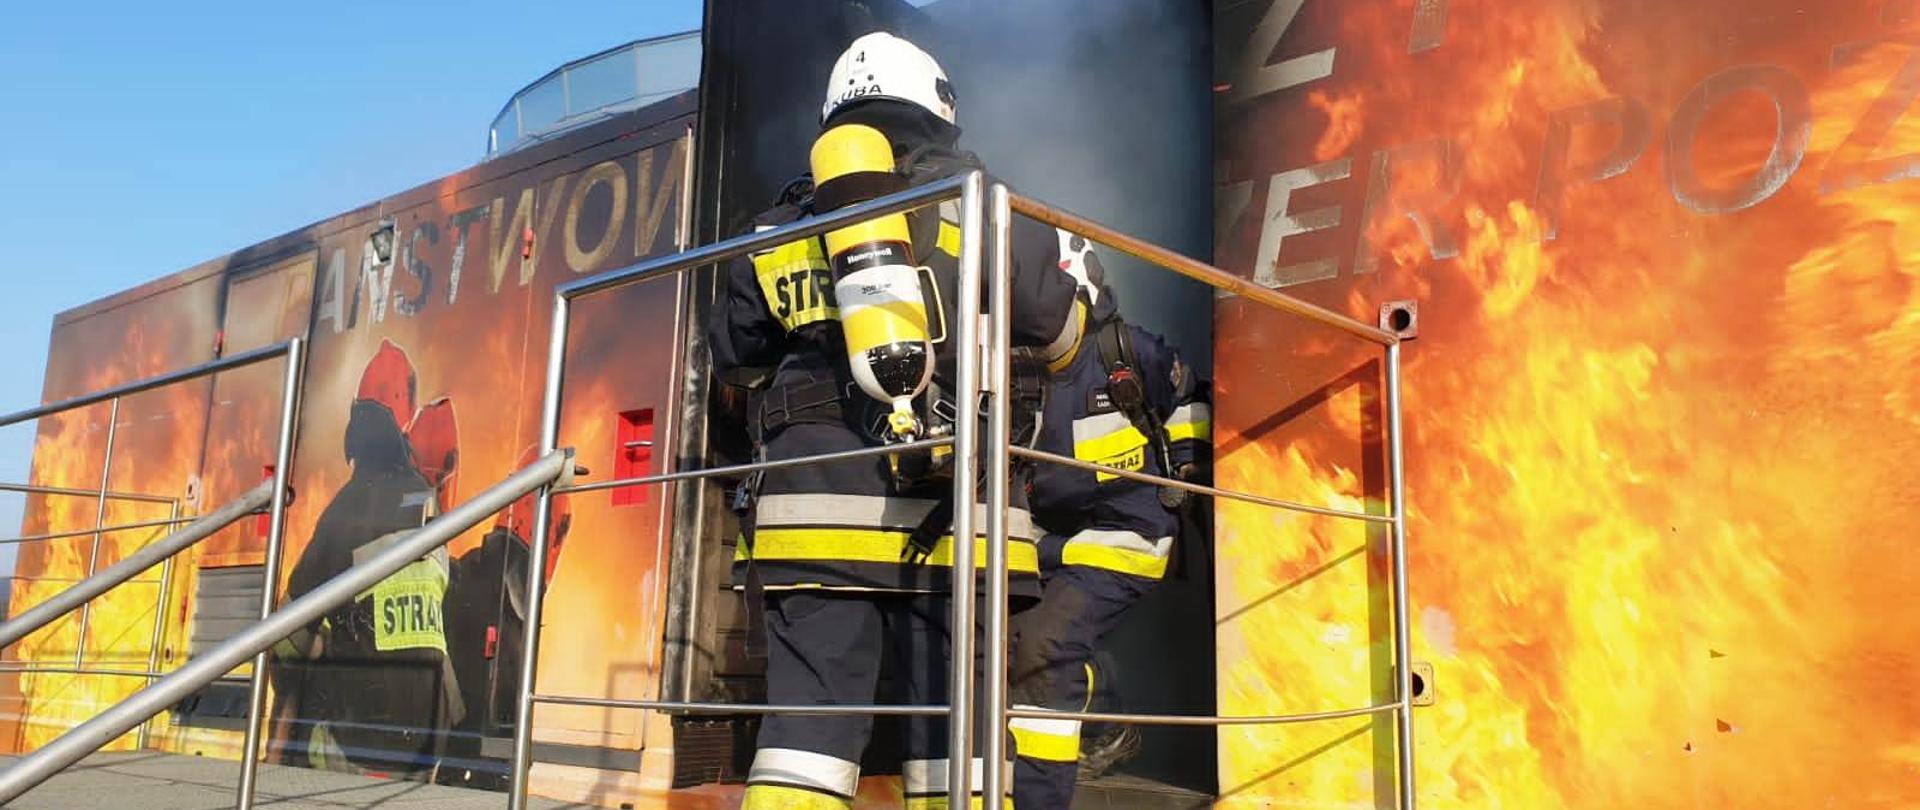 Komora ogniowo rozgorzeniowa na niej namalowanie płomienie oraz trzech strażaków. Z otwartych drzwi komory wydobywa się dym i dwóch strażaków jeden wychodzi a drugi stoi tyłem.